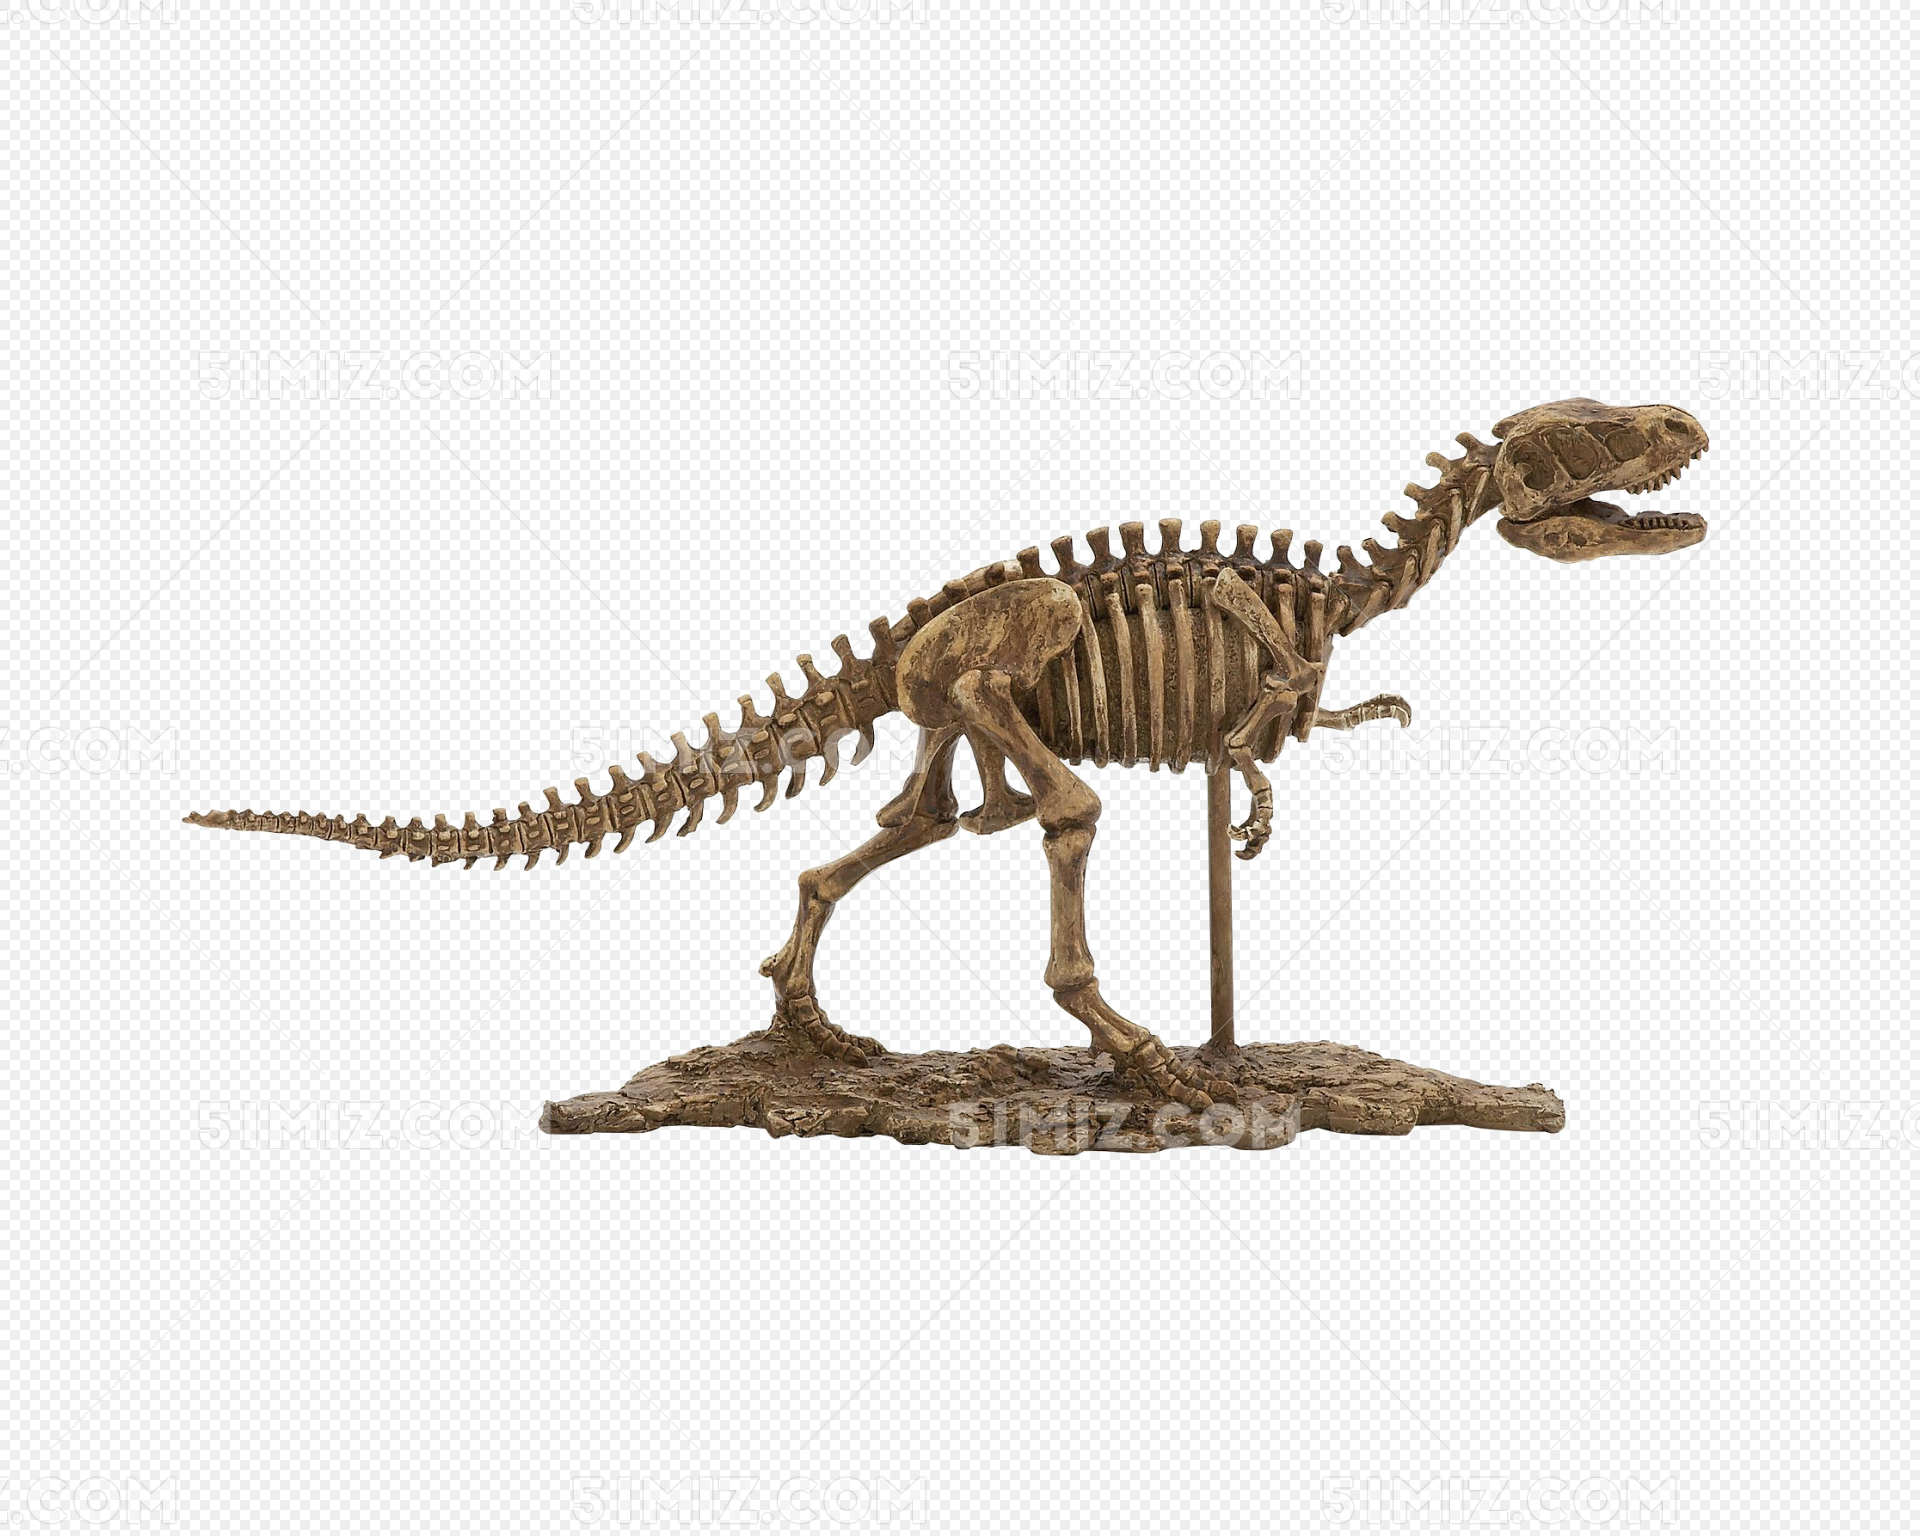 图片素材 : 哺乳动物, 头骨, 脊柱, 骨架, 恐龙, 涡流, 颚, 史前时期, 椎骨, uintatherium, dinocerata ...